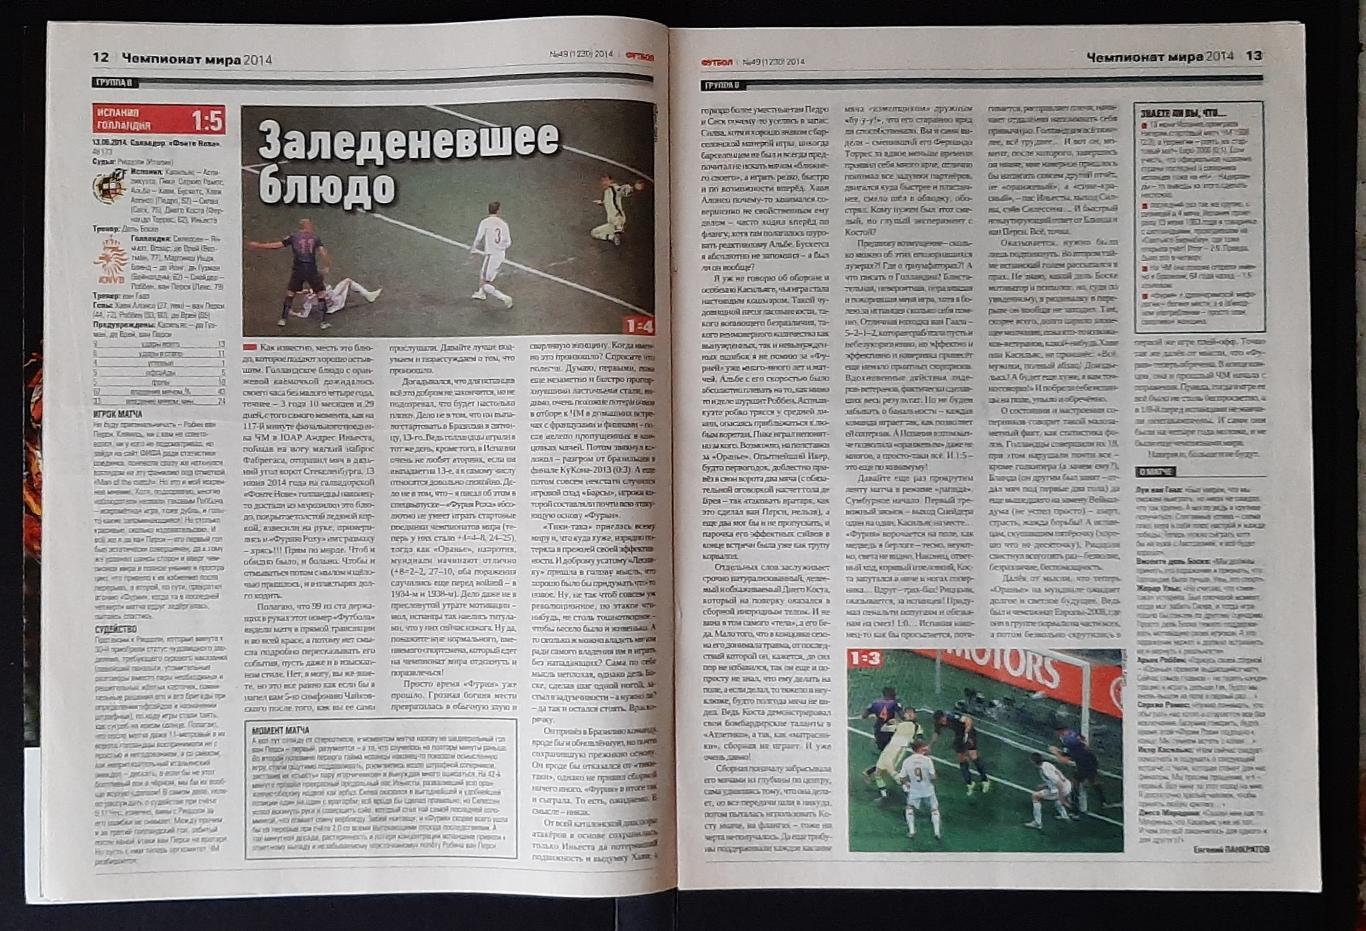 Журнал Футбол #49 2014 матчі Чемпіонату світу 3